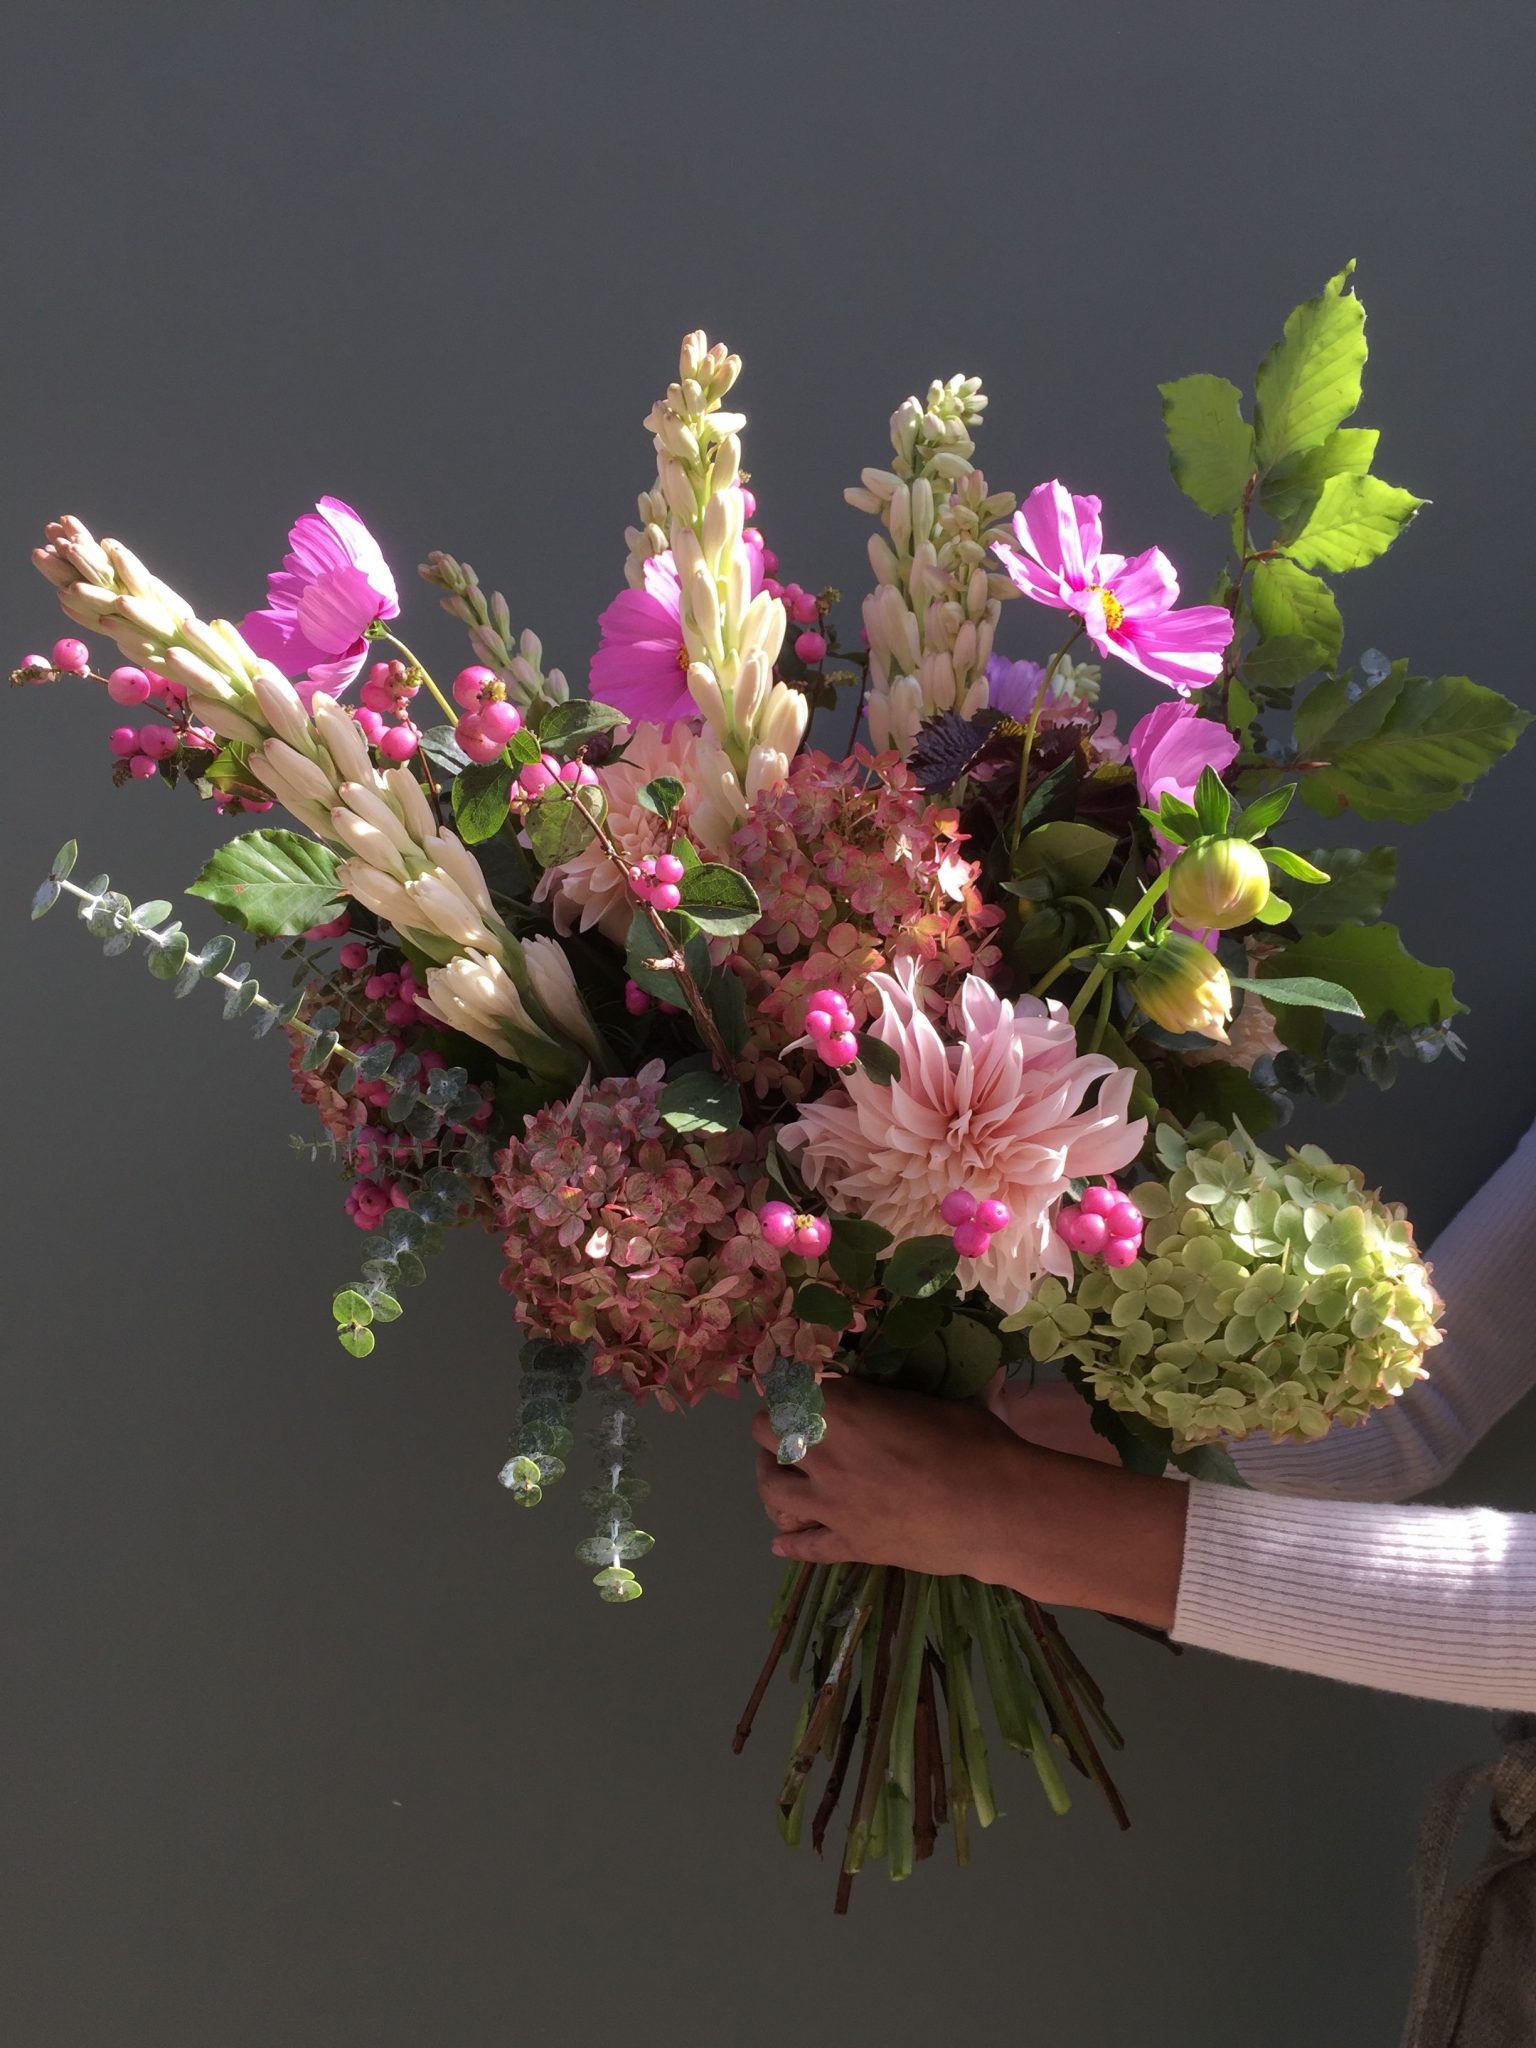 Seasonal Hand Tied Bouquet Kensington Flowers